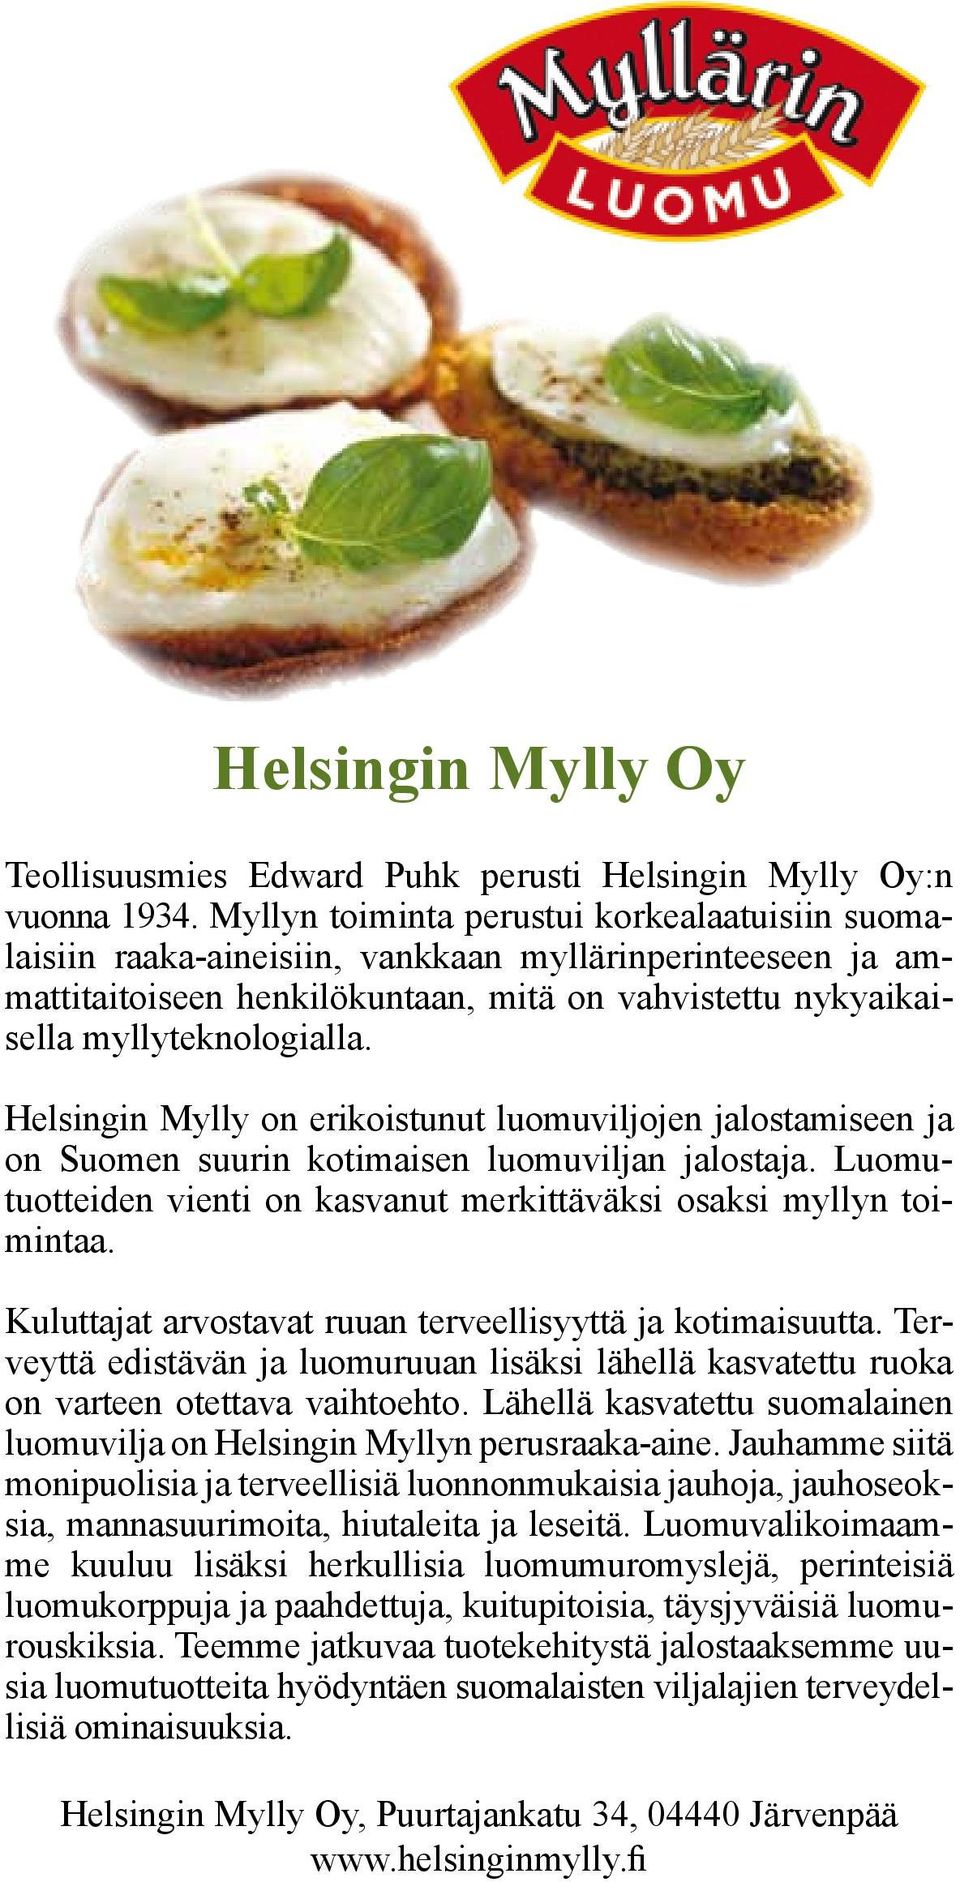 Helsingin Mylly on erikoistunut luomuviljojen jalostamiseen ja on Suomen suurin kotimaisen luomuviljan jalostaja. Luomutuotteiden vienti on kasvanut merkittäväksi osaksi myllyn toimintaa.